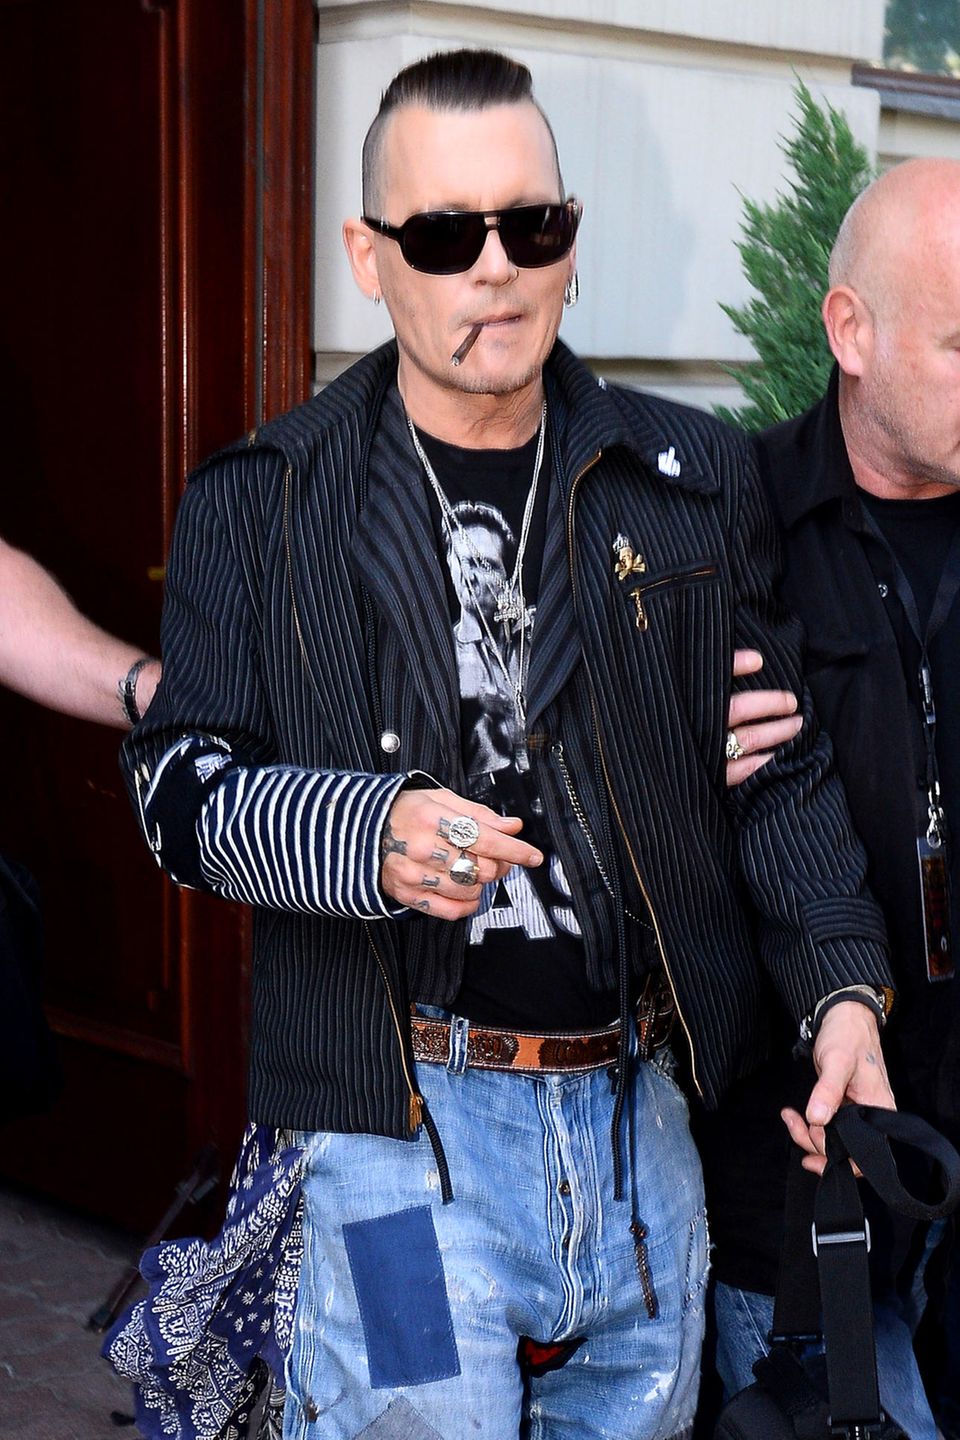 Aktuelle Bilder von dem einstigen Sexsymbol versetzen Johnny Depps Fans in Sorge und sein jetziger abgemagerter Gammel-Look sorgt für Spekulation über eine mögliche Krankheit. 